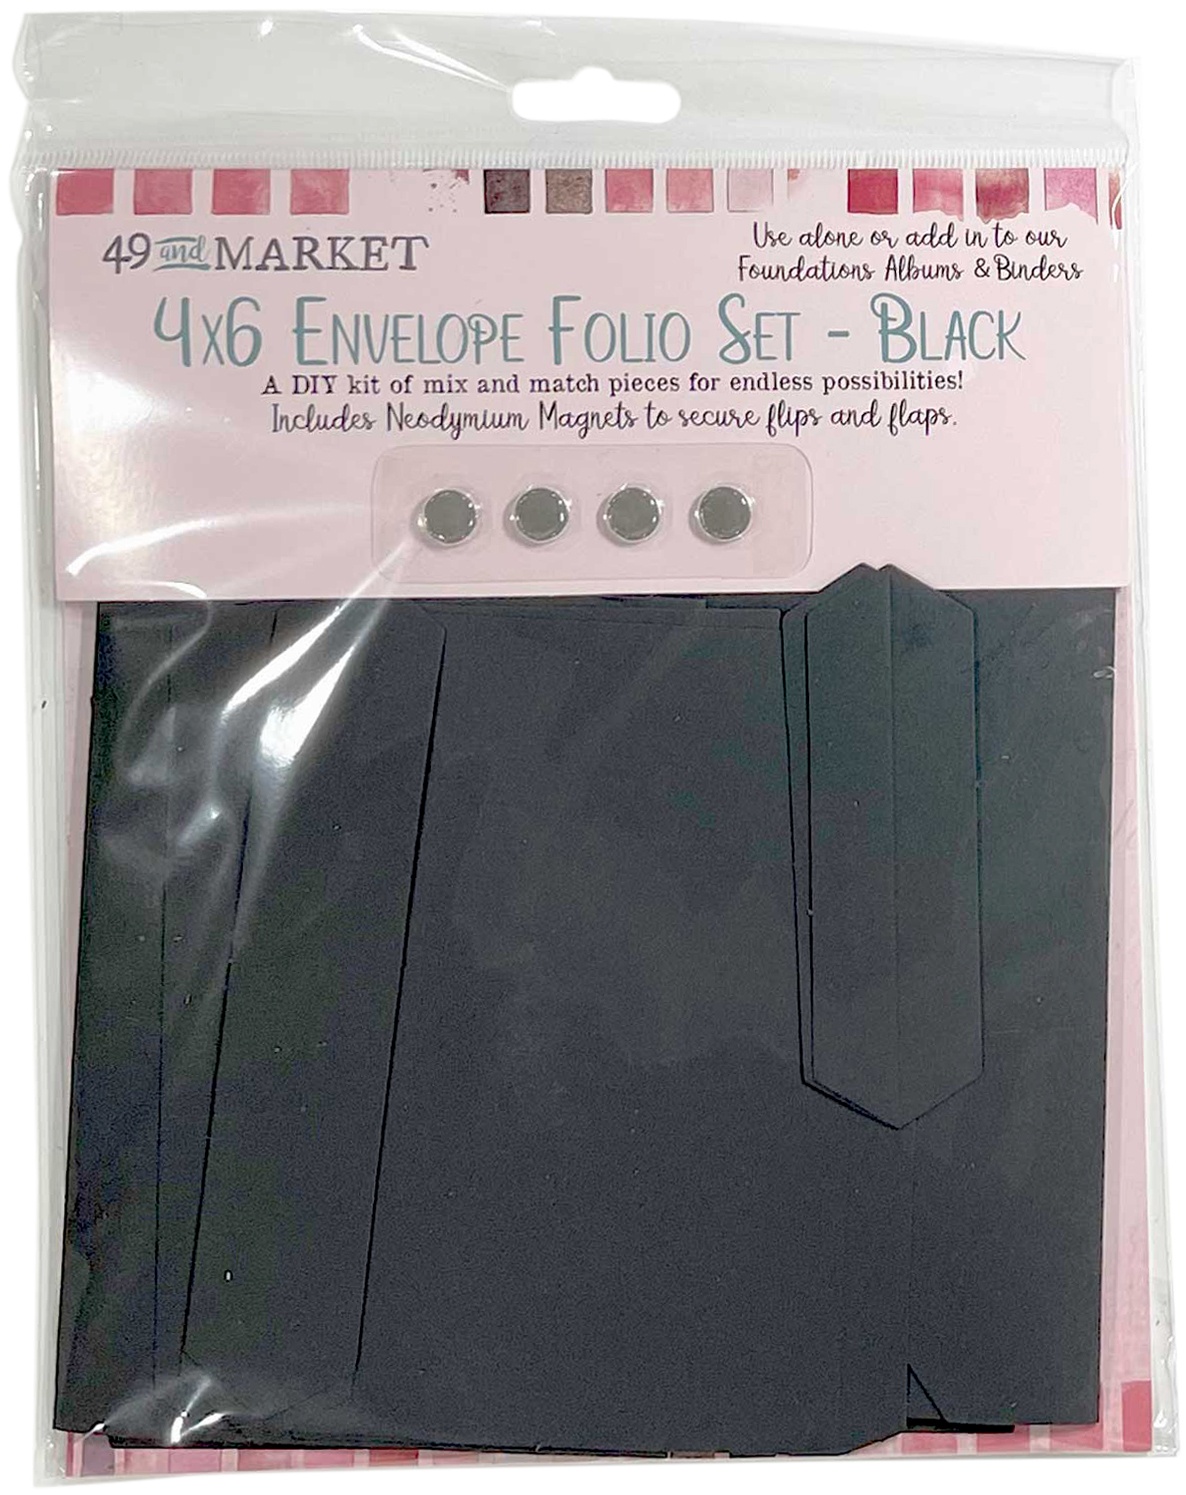 Bild von 49 And Market Foundations 4"X6" Envelope Folio Set-Black